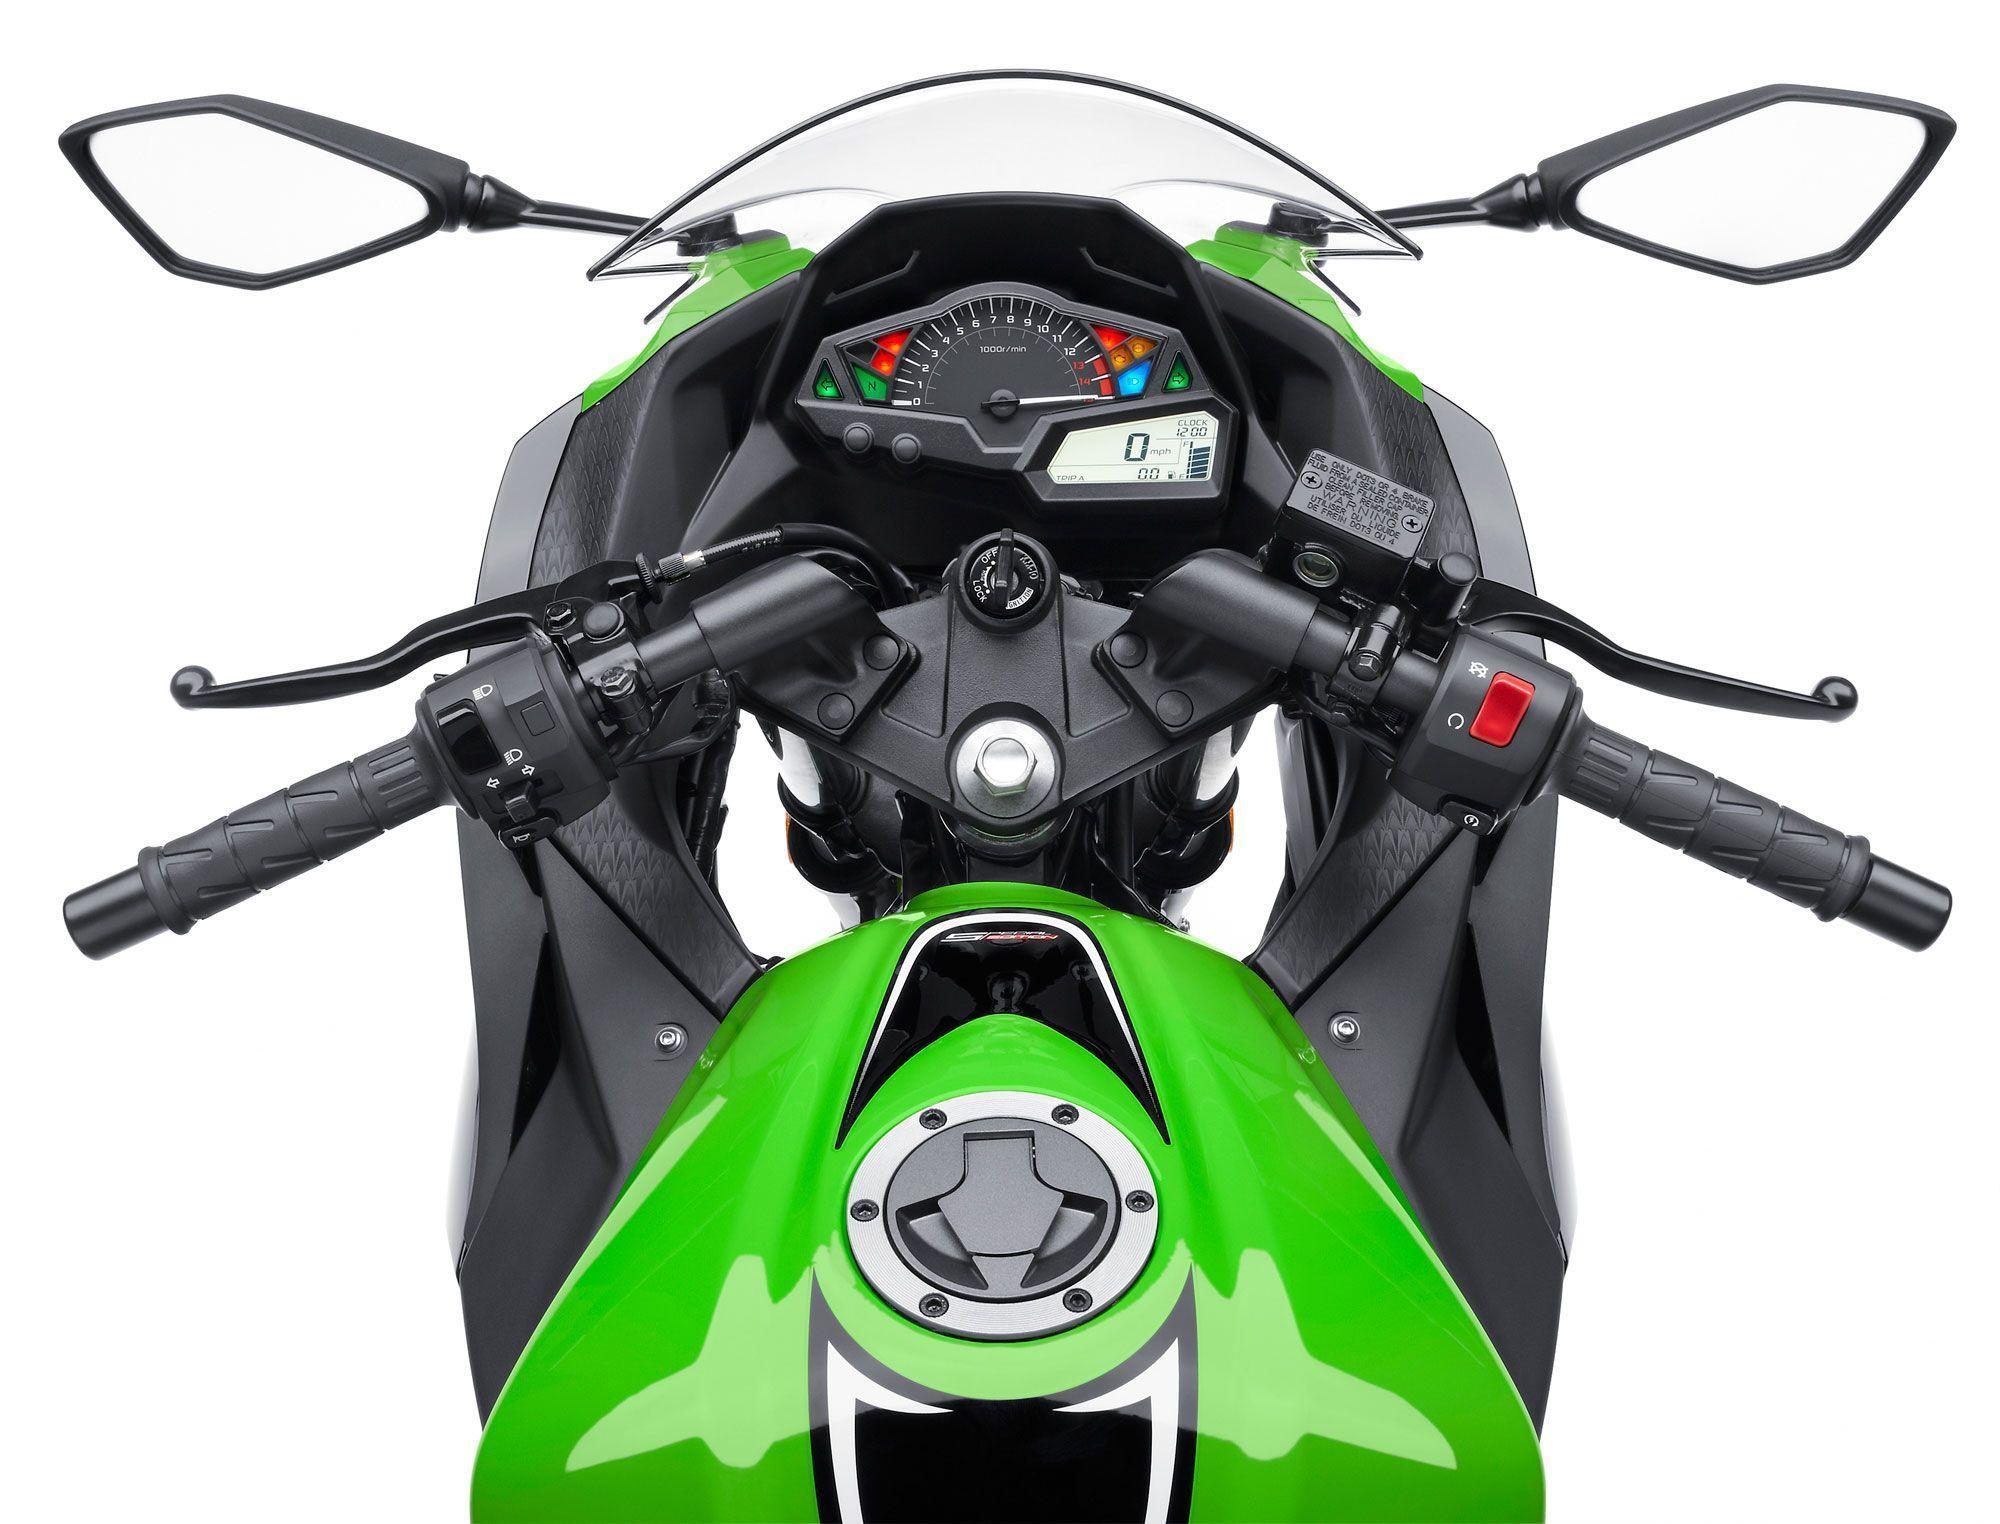 Kawasaki Ninja 300 Special Edition ABS Review